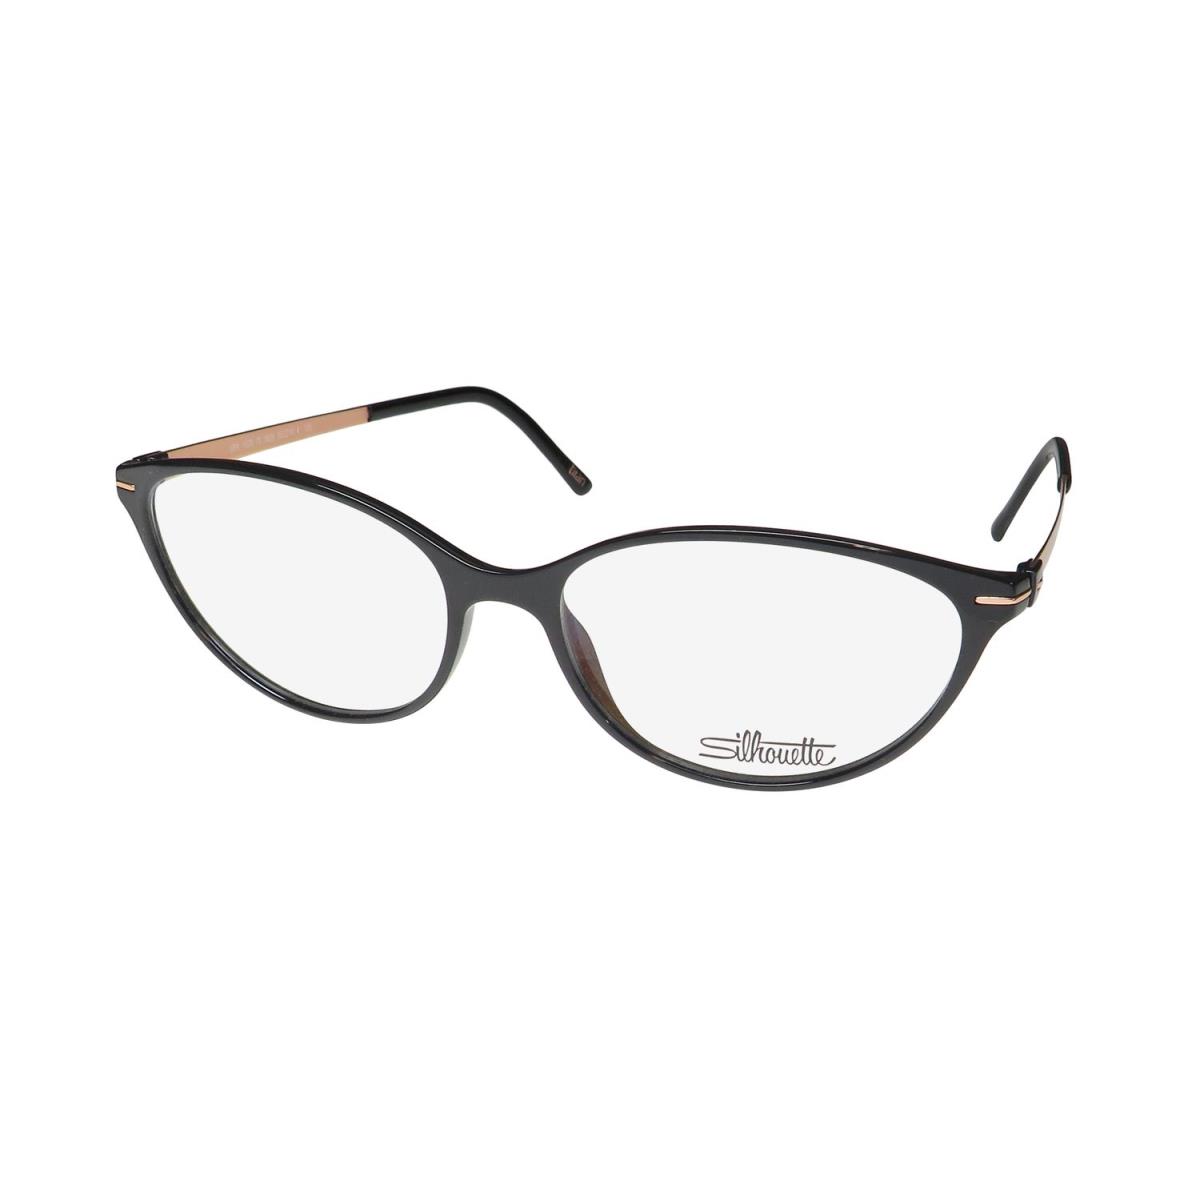 Silhouette 1578 School Teacher/librarian Look 60S/70S Eyeglass Frame/glasses Shiny Black